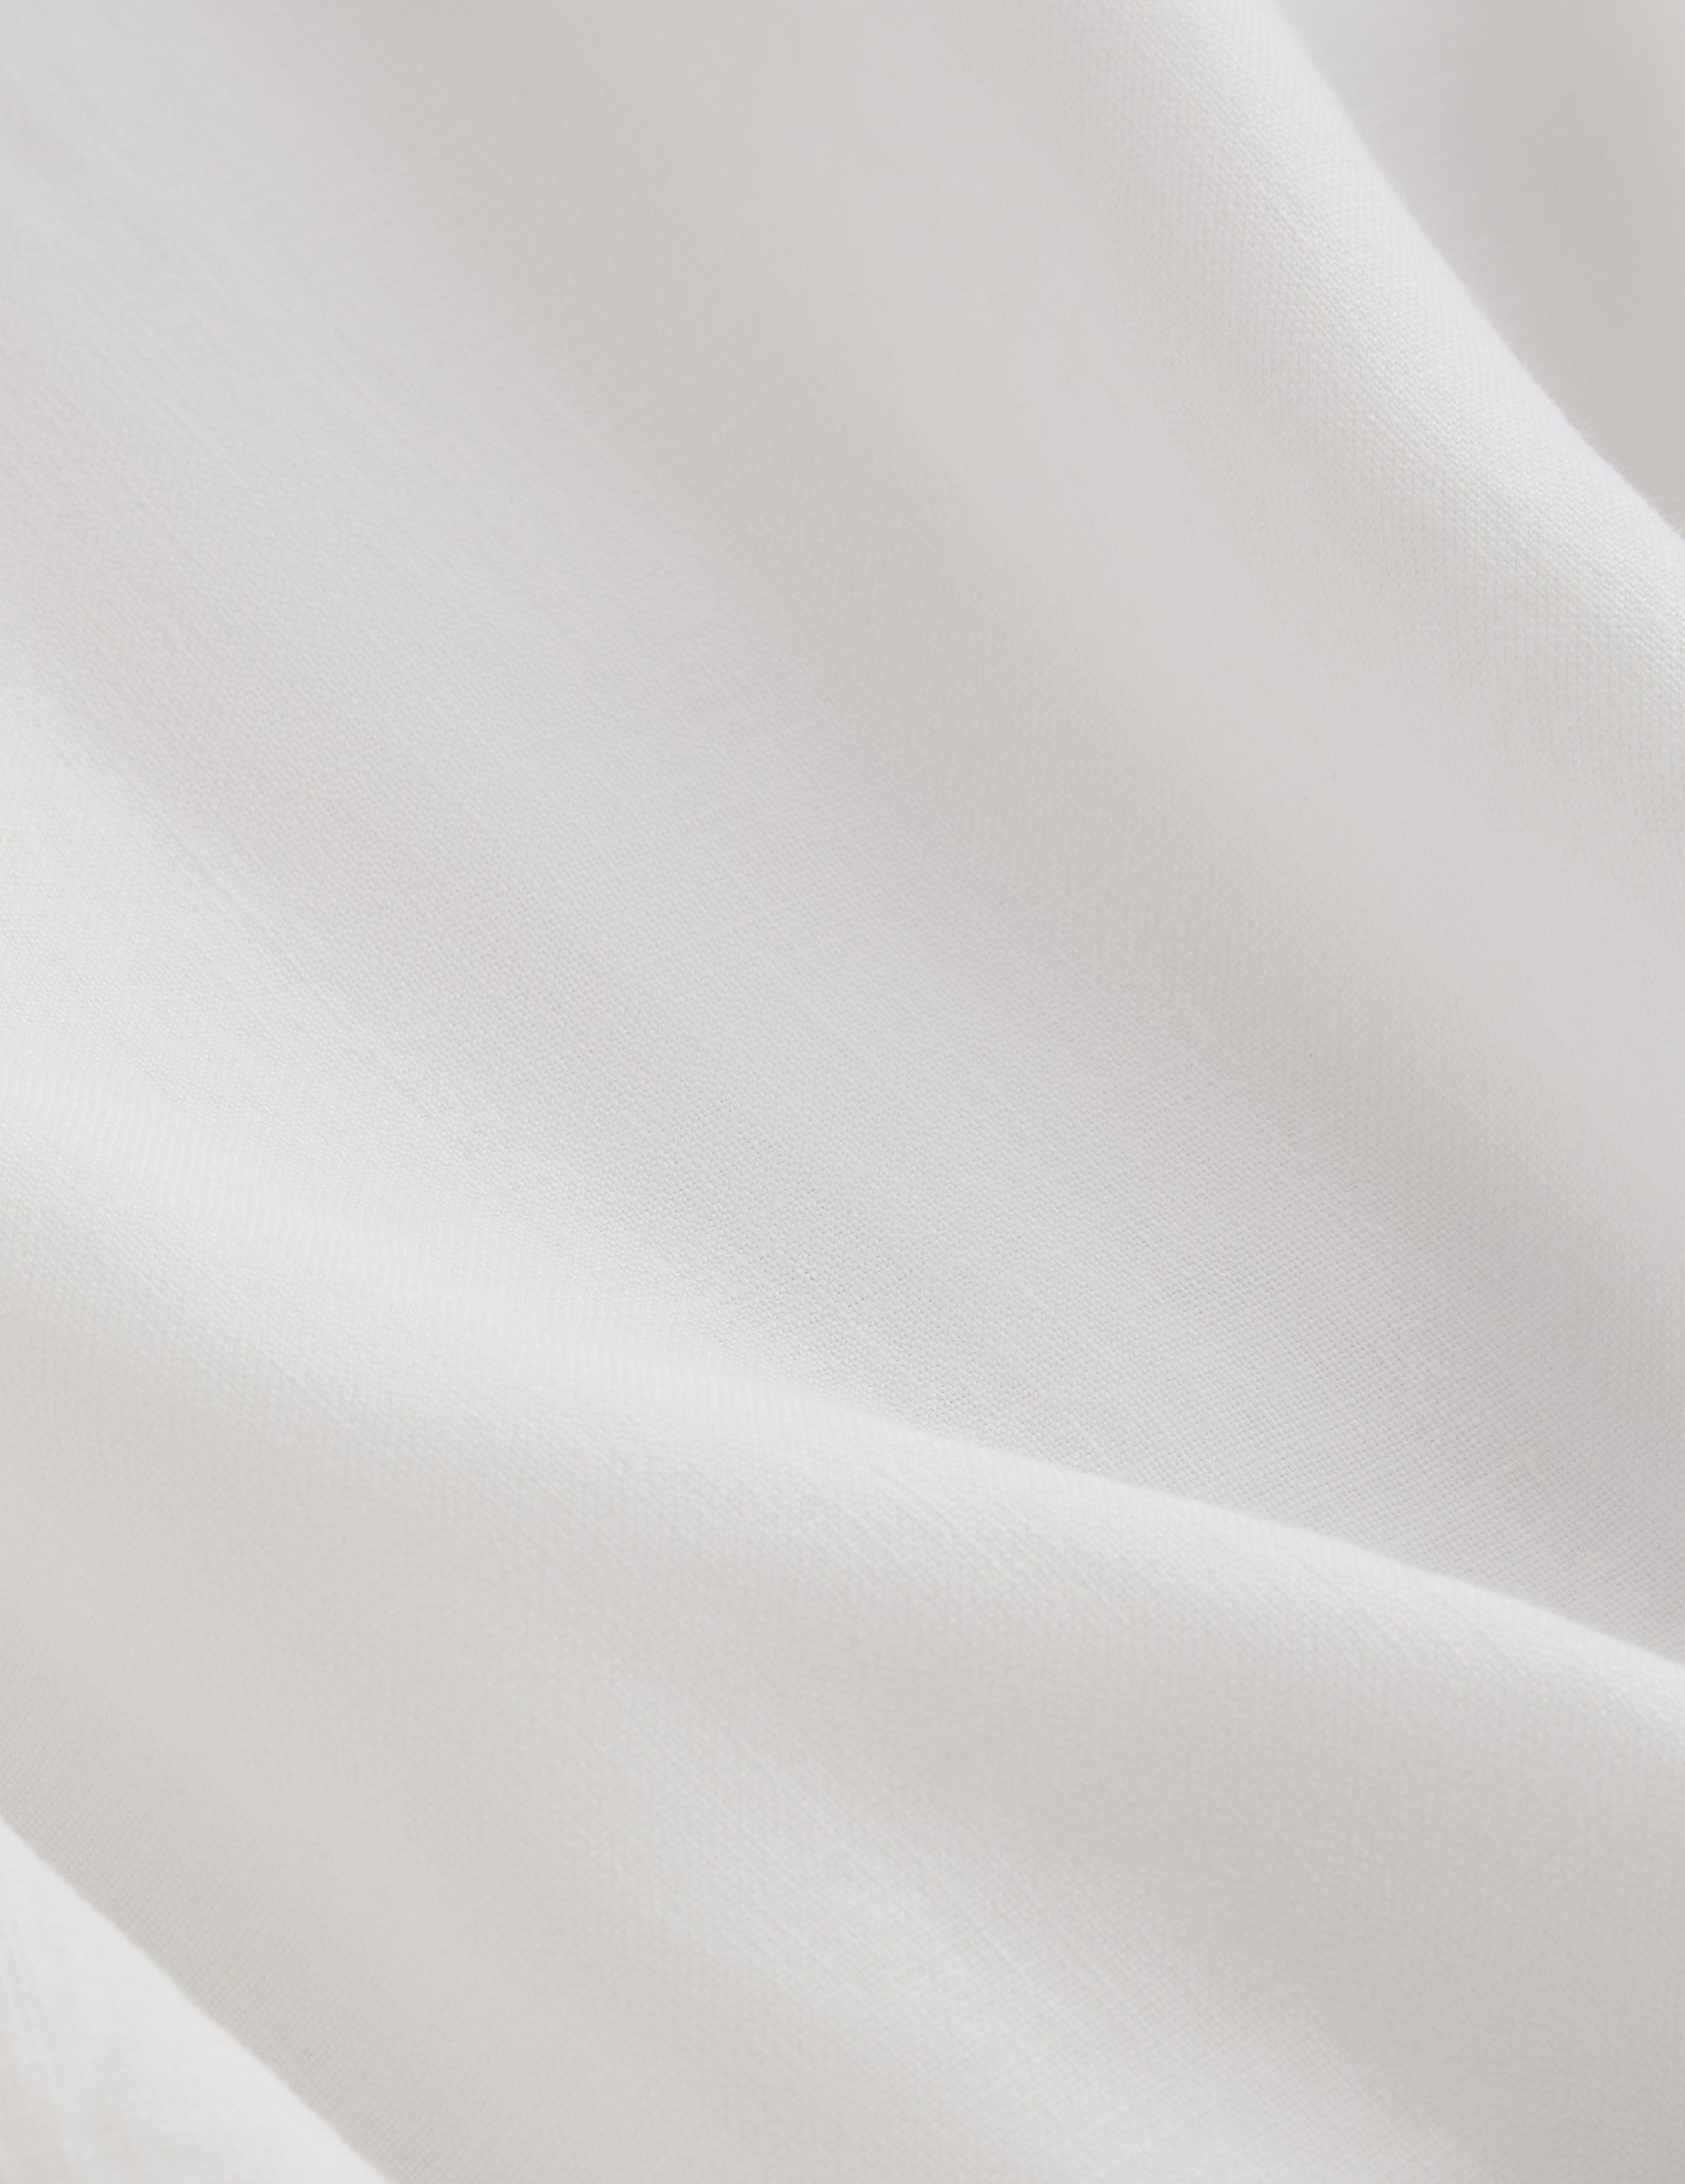 Carl white linen shirt - Linen - Open straight Collar